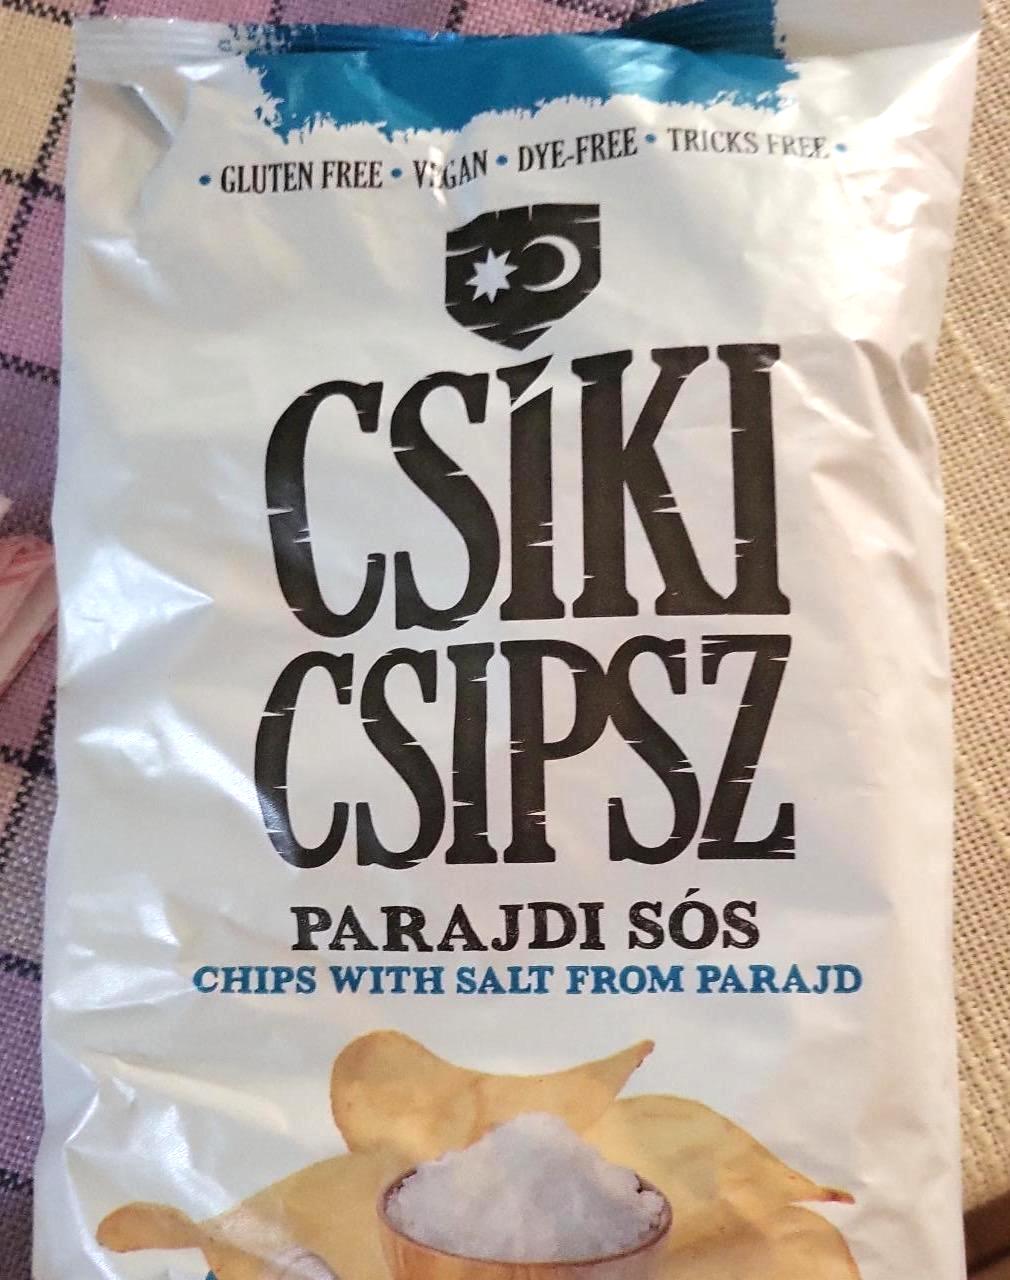 Képek - Csiki chipsz parajdi sós